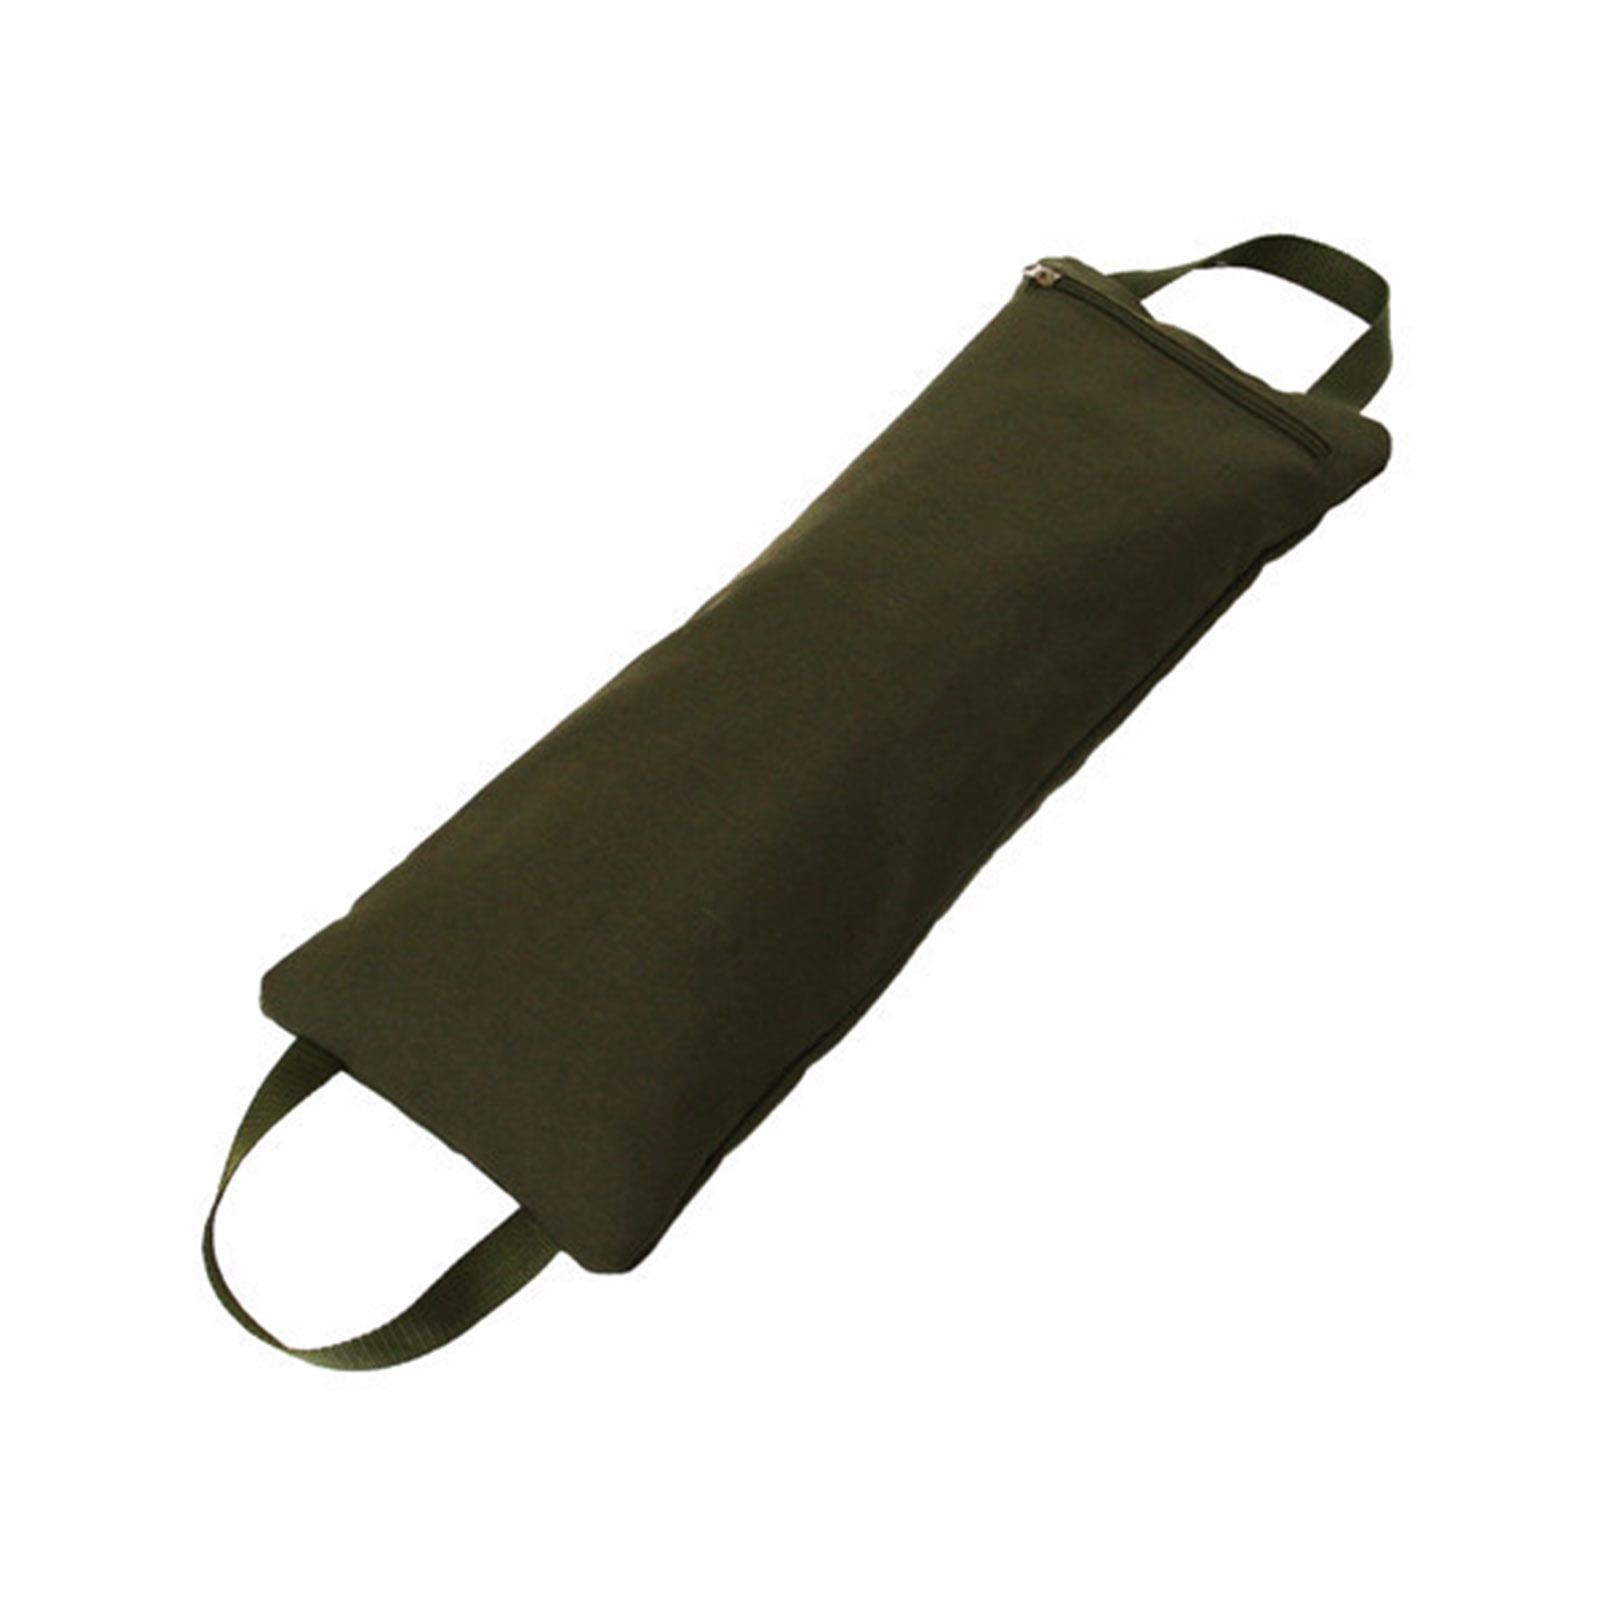 MYBOON Foldable Filled Yoga Sandbag with Two Handle for Yoga Weights and Resistance Yoga Sandbag BK 